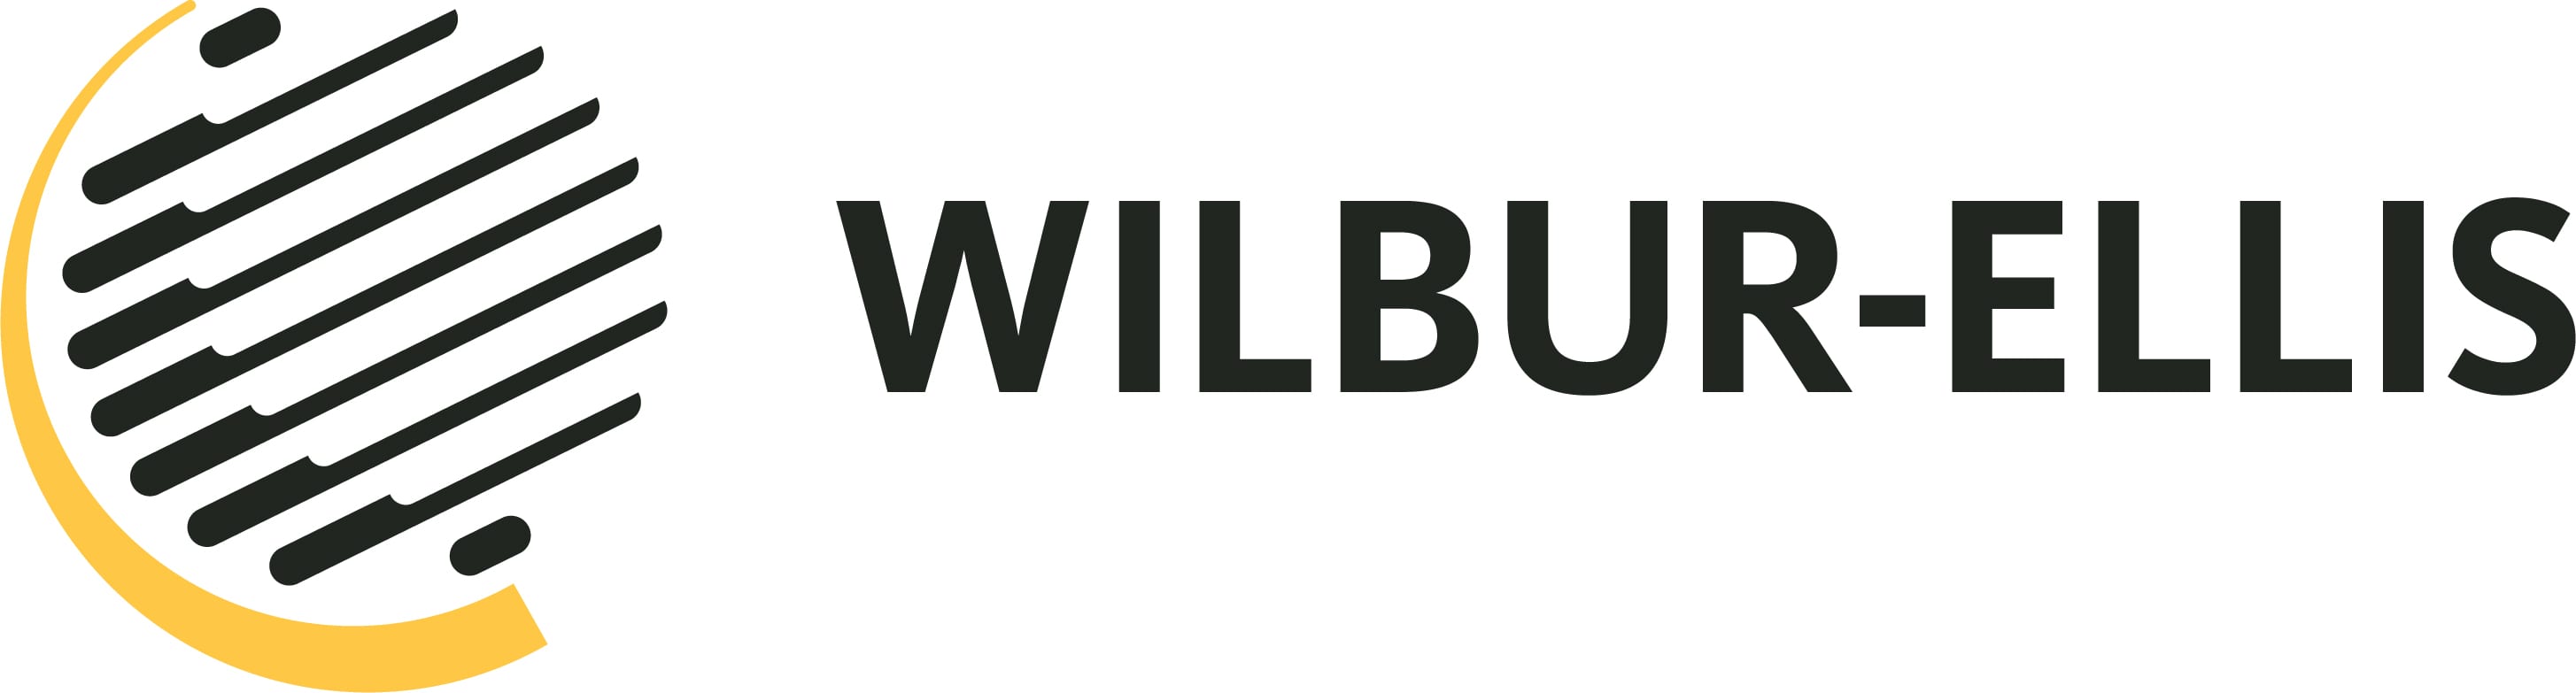 new purpose, new logo. one wilbur-ellis. - wilbur-ellis corporate